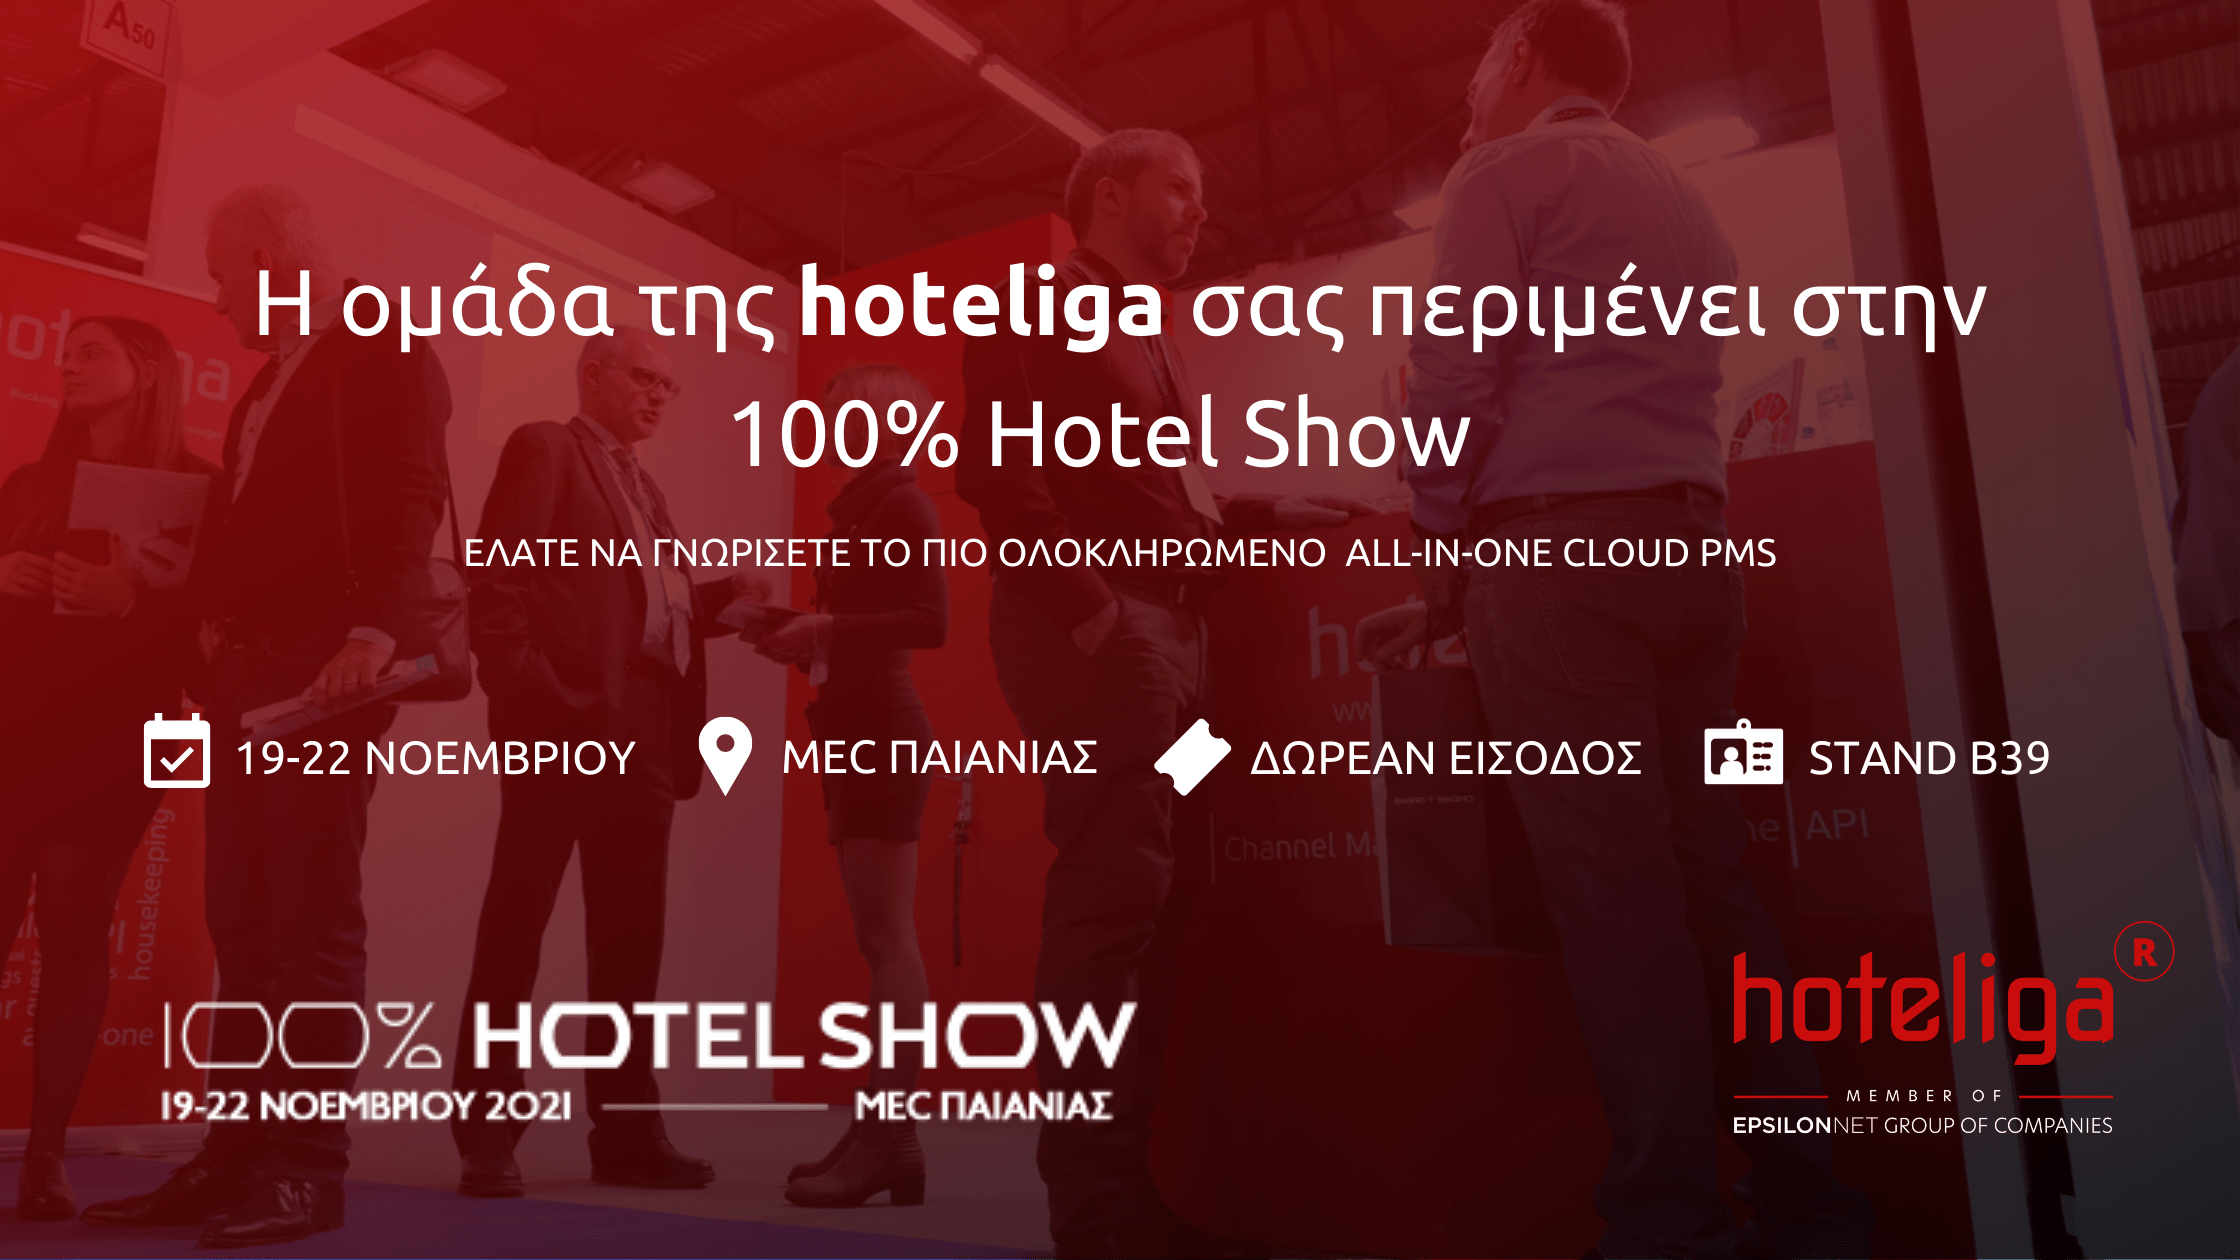 Η ομάδα της hoteliga σας περιμένει στην 100% Hotel Show